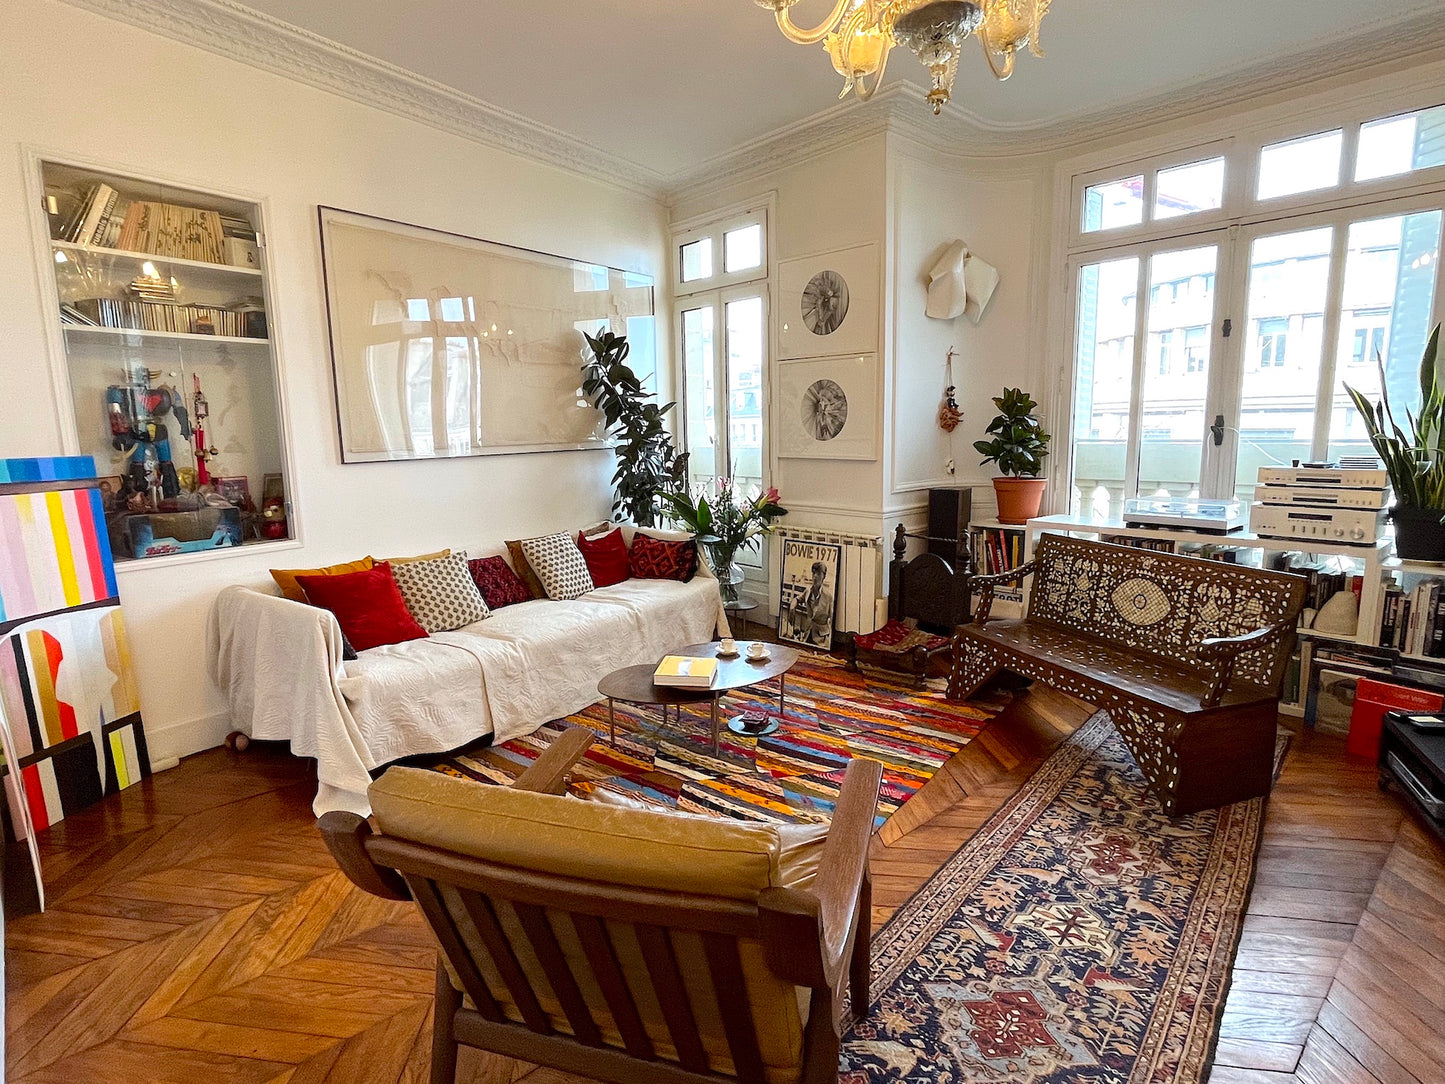 The Bonne Nouvelle apartment